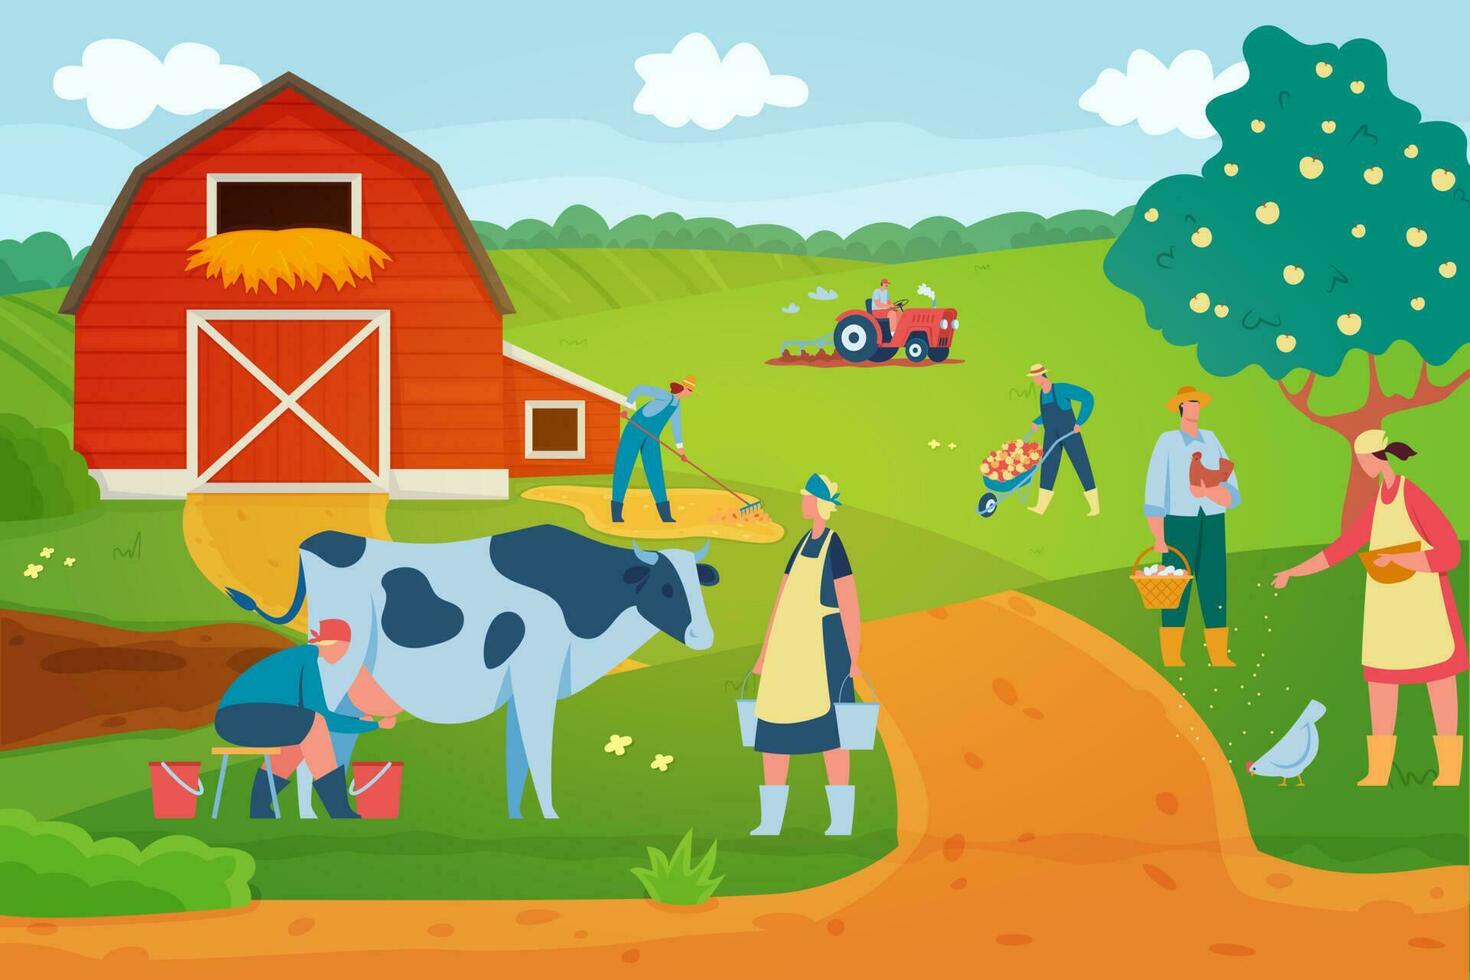 agricultores às trabalhar, personagens alimentando galinhas e colecionar ovos. mulheres ordenha vaca e carregando baldes vetor